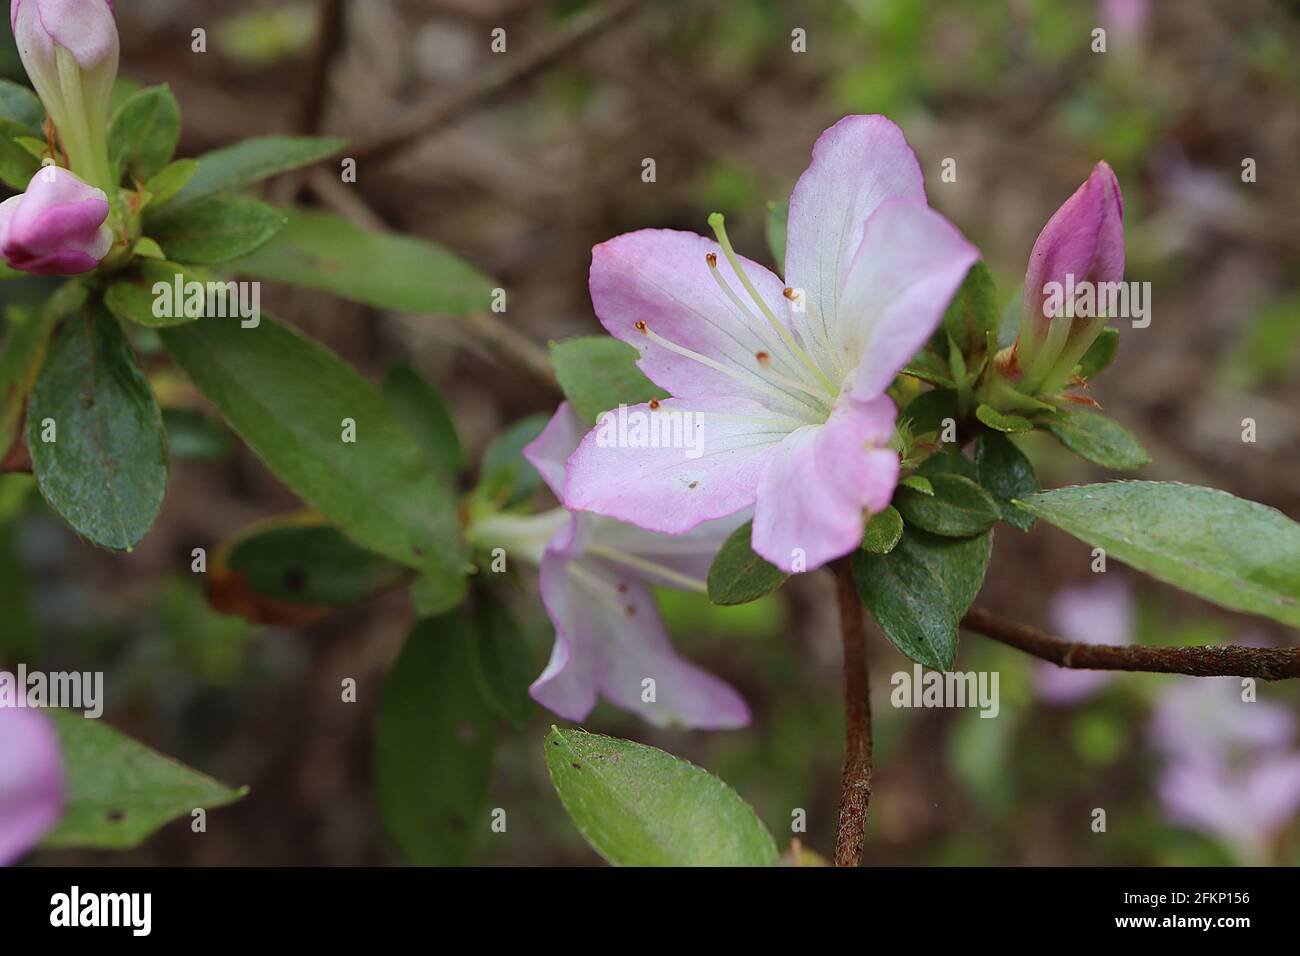 Azalea / Rhododendron ‘Iroho yama’ o ‘Dainty’ (Wilson 8) piccoli fiori bianchi e rosa a forma di imbuto, maggio, Inghilterra, Regno Unito Foto Stock